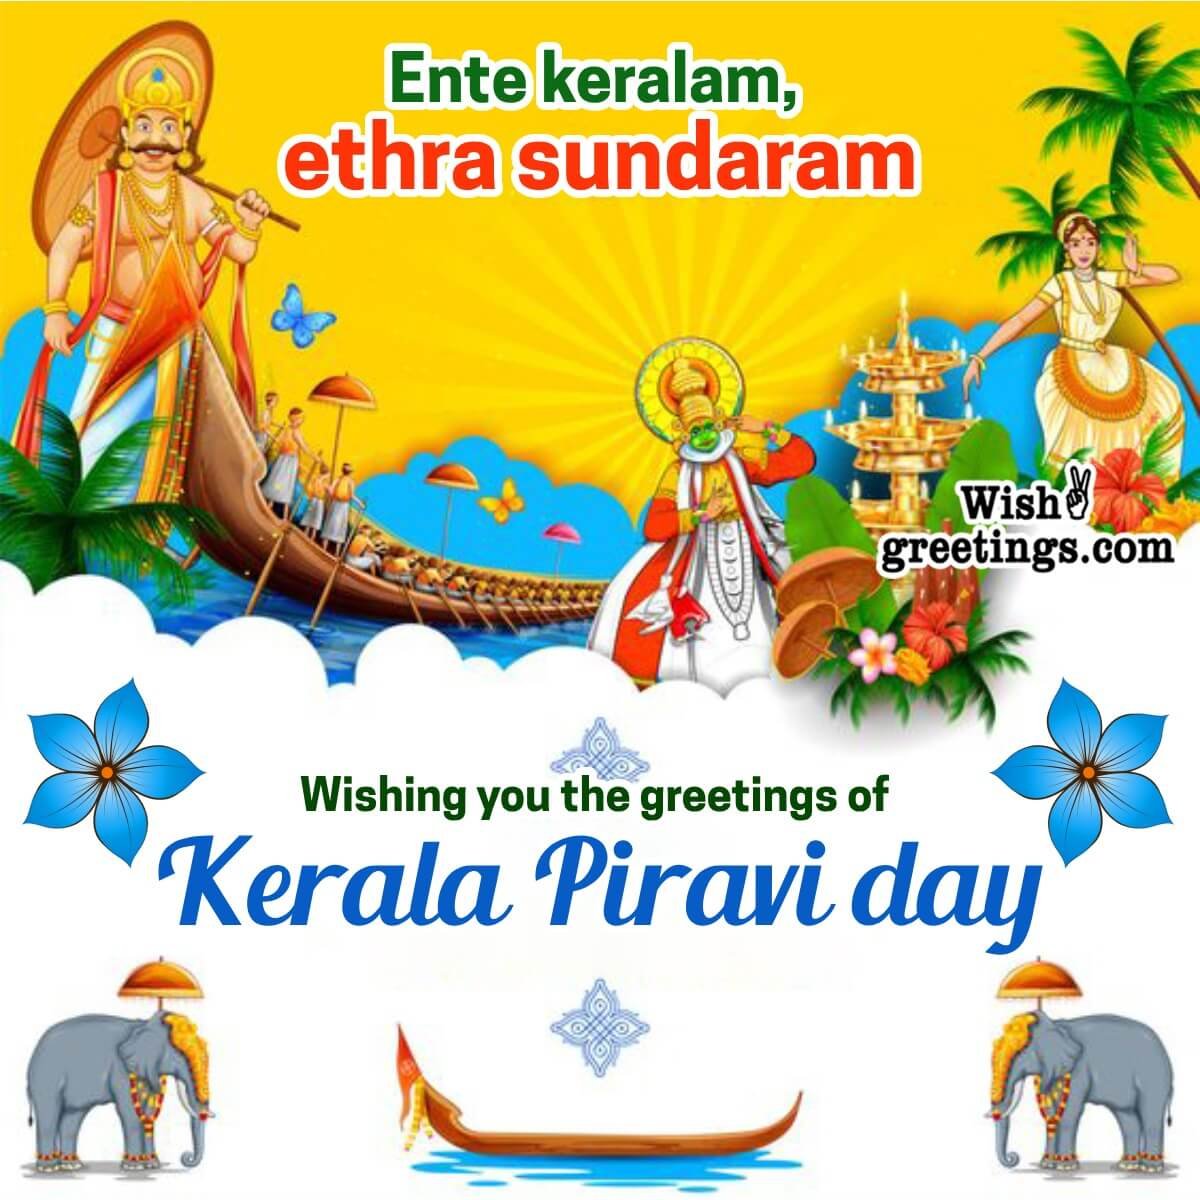 Kerala Piravi Day Greetings